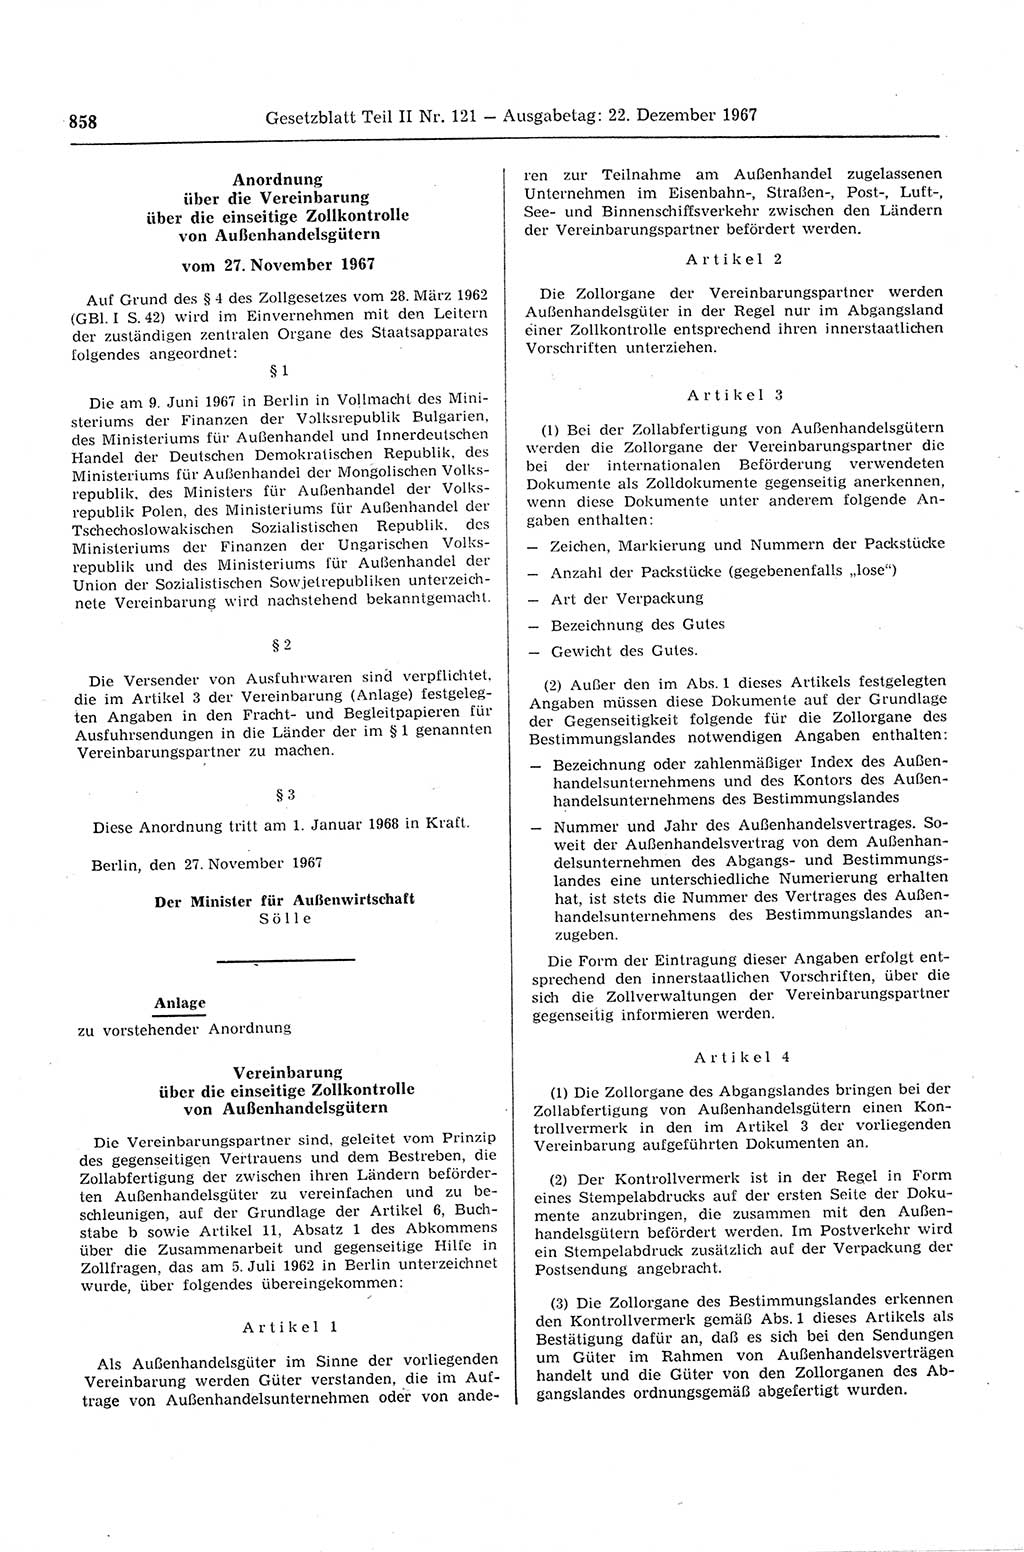 Gesetzblatt (GBl.) der Deutschen Demokratischen Republik (DDR) Teil ⅠⅠ 1967, Seite 858 (GBl. DDR ⅠⅠ 1967, S. 858)